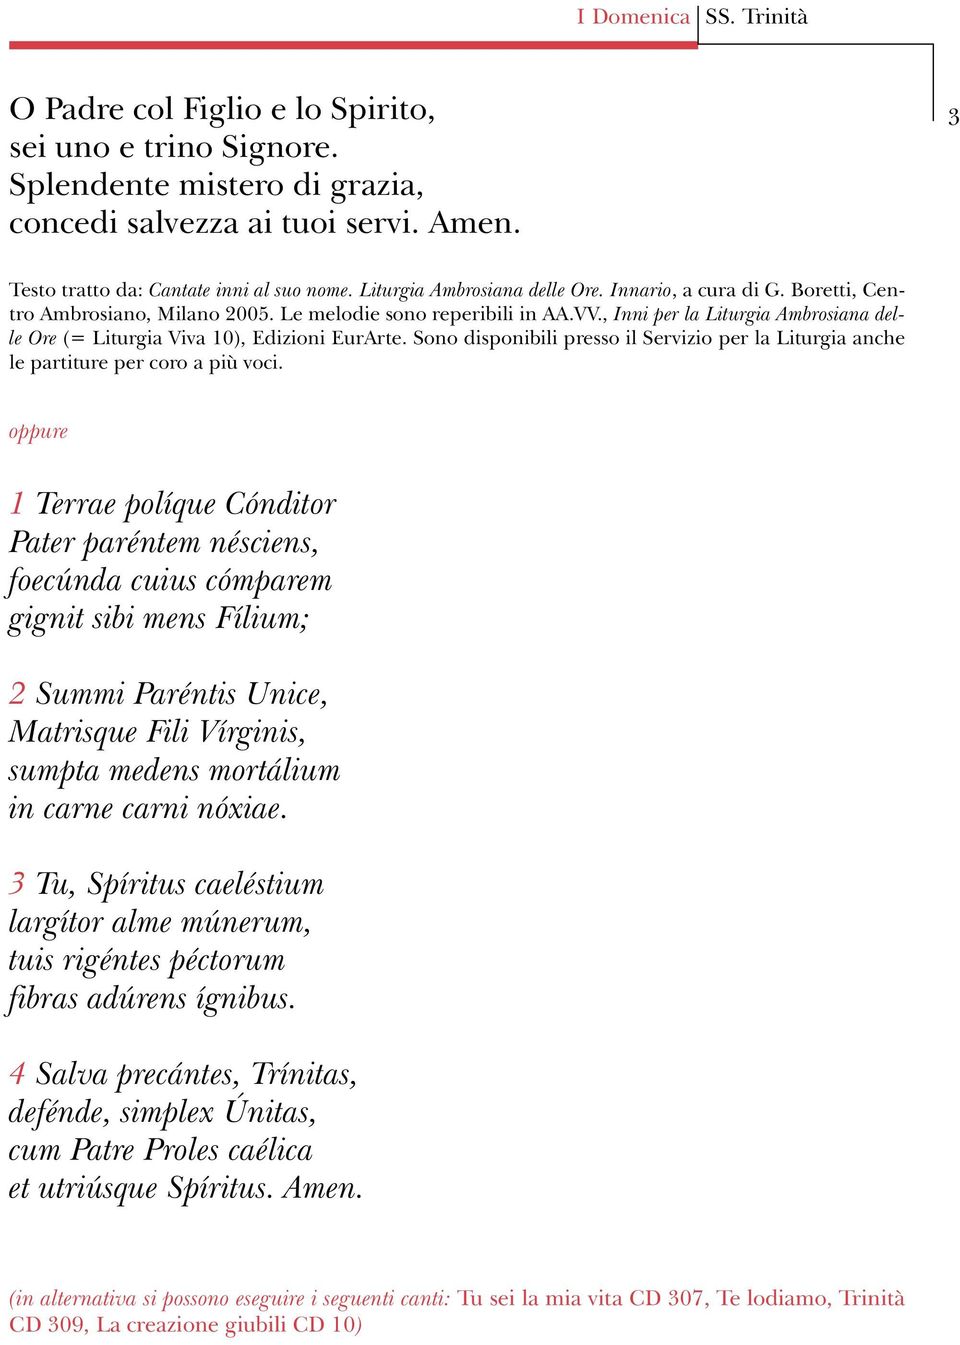 , Inni per la Liturgia Ambrosiana delle Ore (= Liturgia Viva 10), Edizioni EurArte. Sono disponibili presso il Servizio per la Liturgia anche le partiture per coro a più voci.